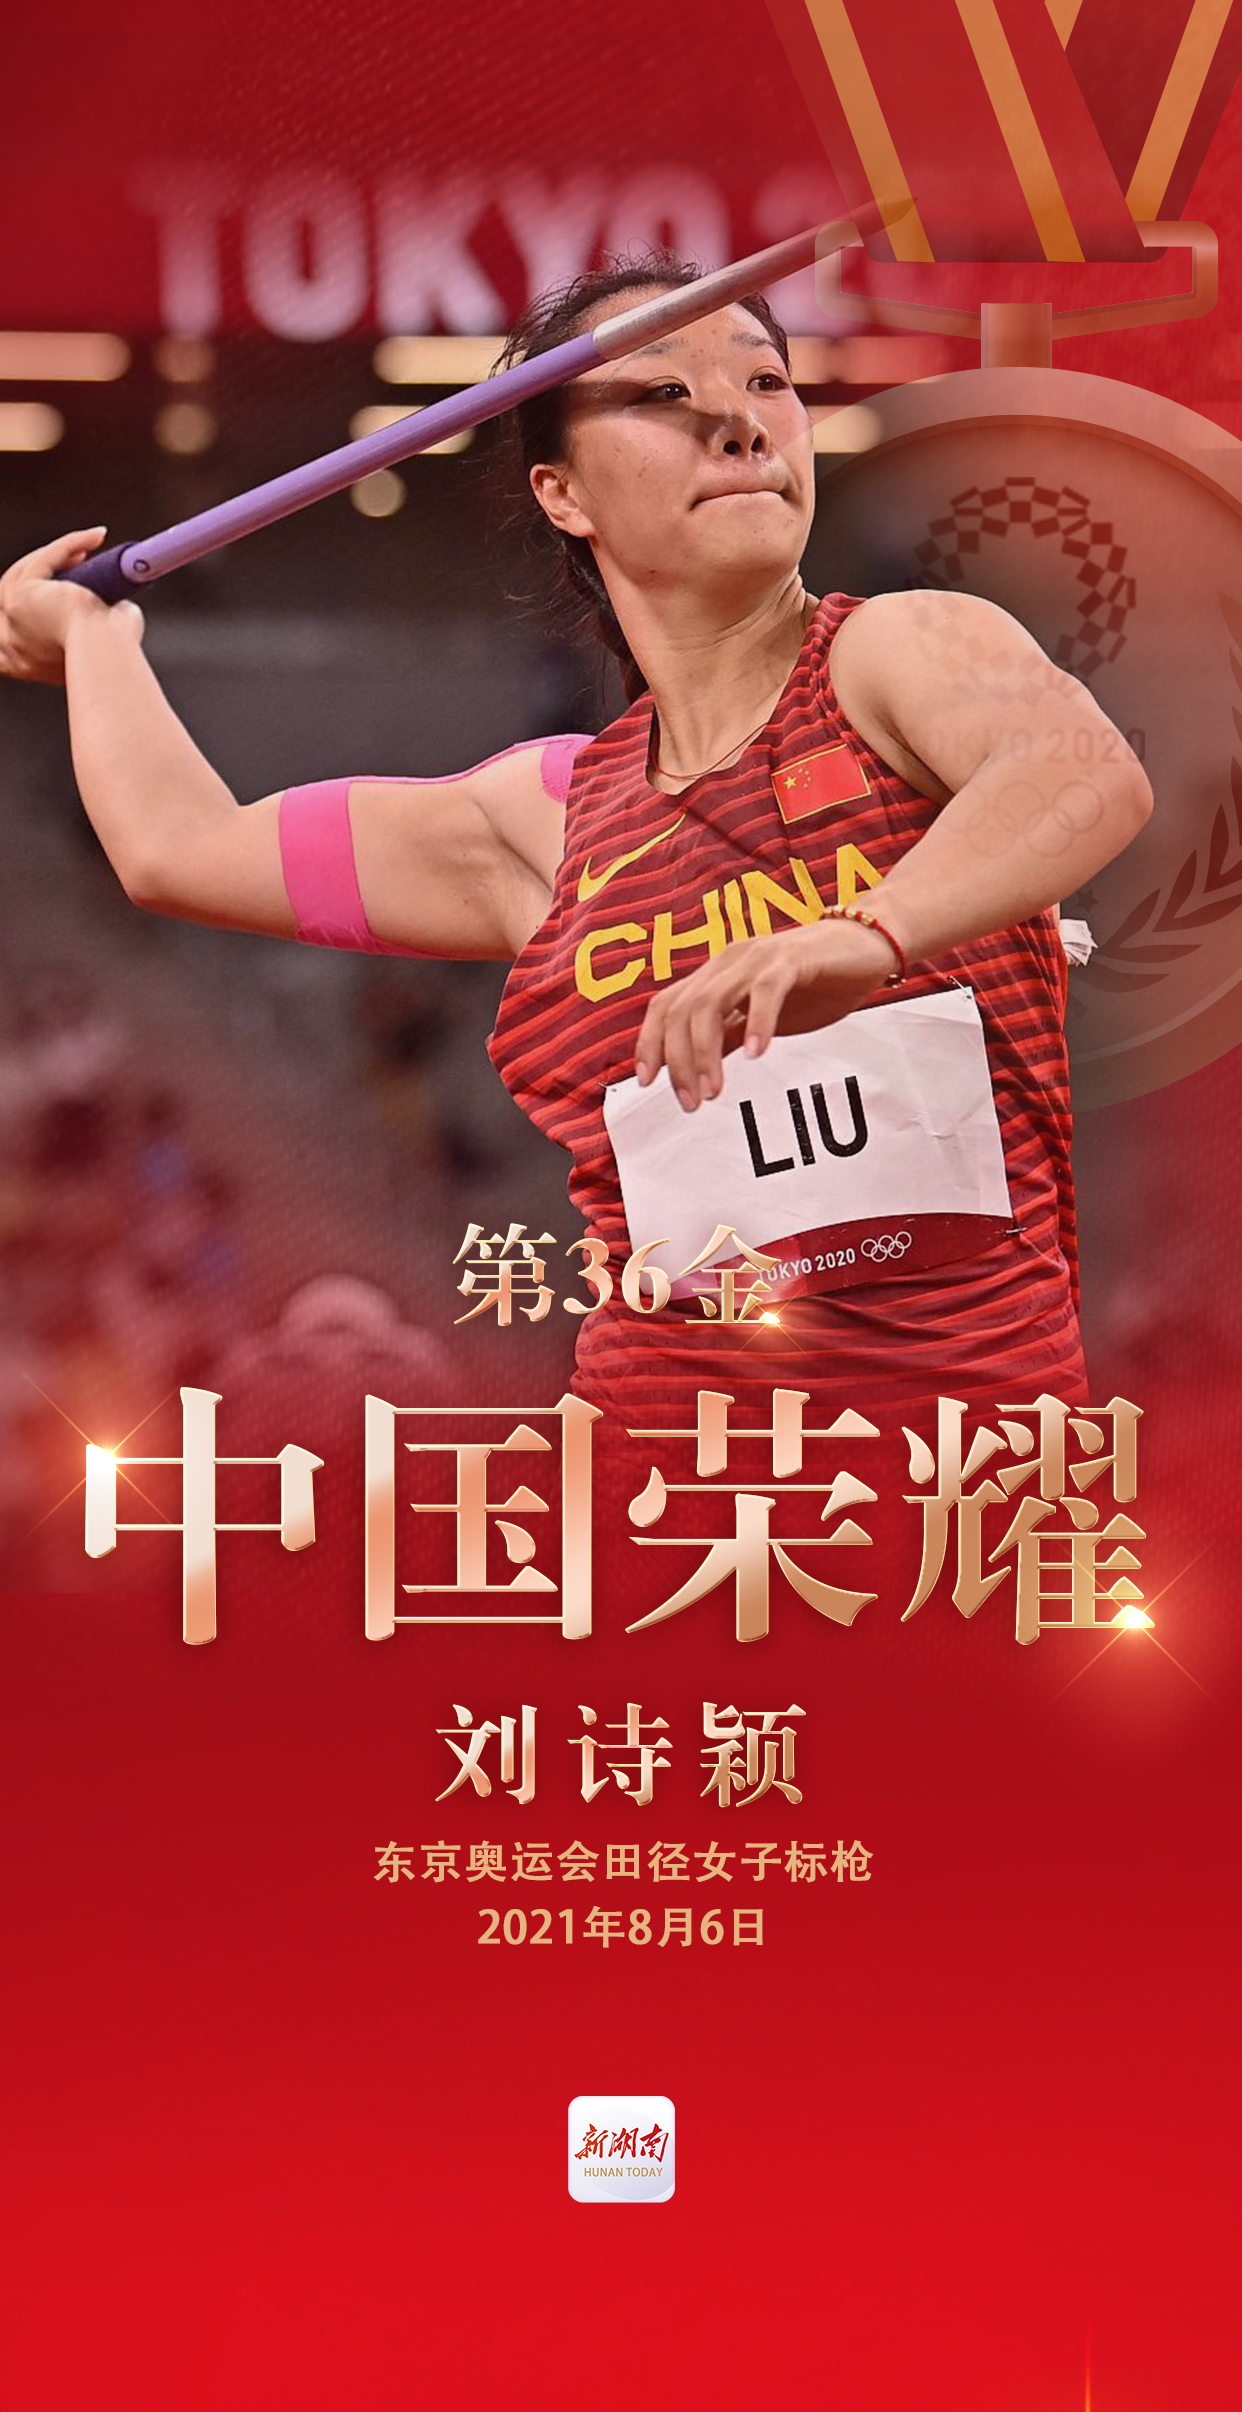 视频海报丨第36金!刘诗颖获得东京奥运会女子标枪金牌